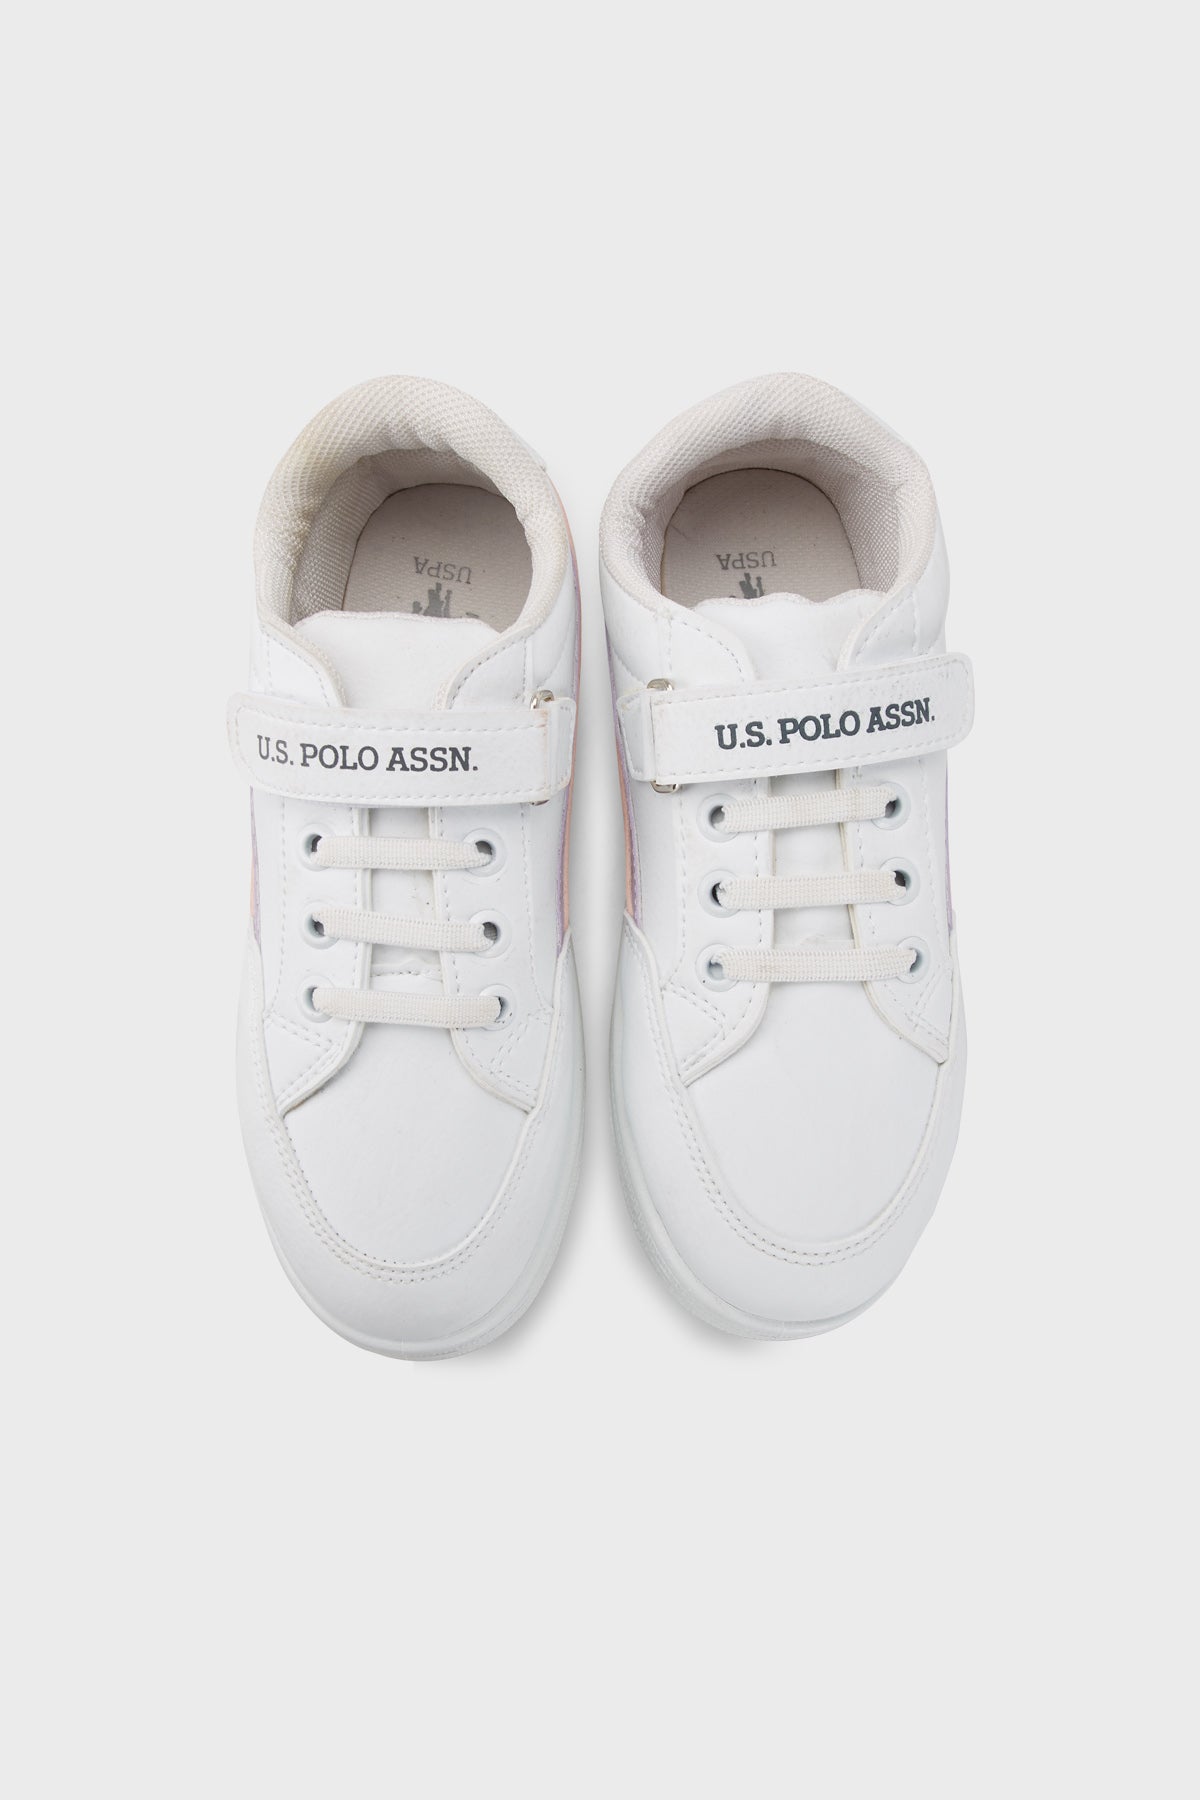 U.S. Polo Assn Logolu Cırtlı Sneaker Kız Çocuk Ayakkabı JAMAL 3FX BEYAZ